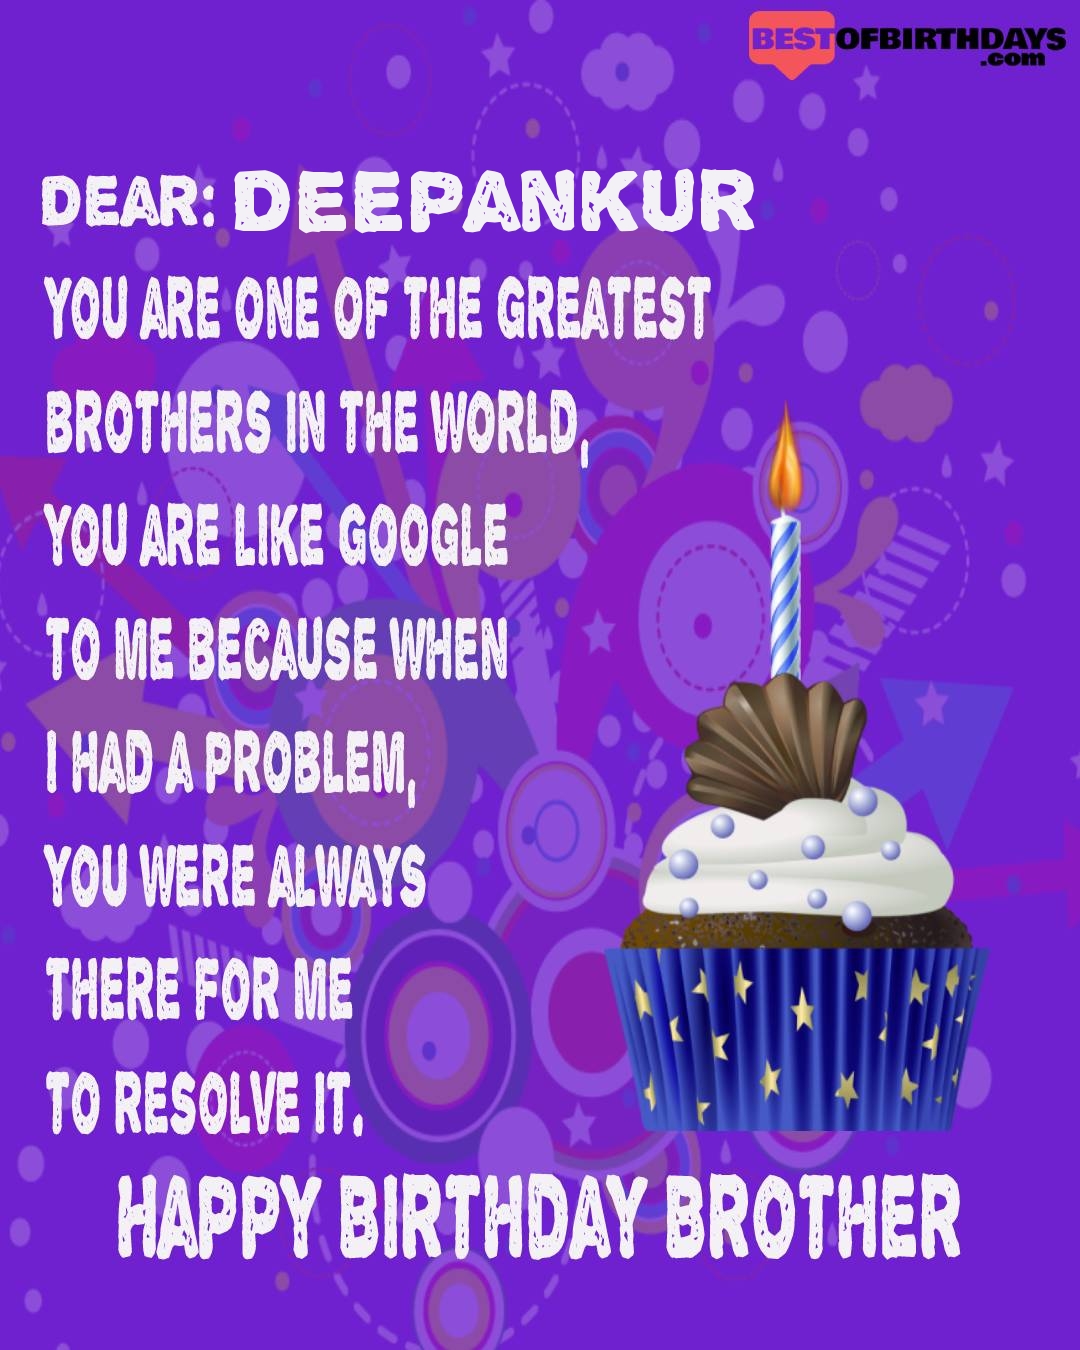 Happy birthday deepankur bhai brother bro